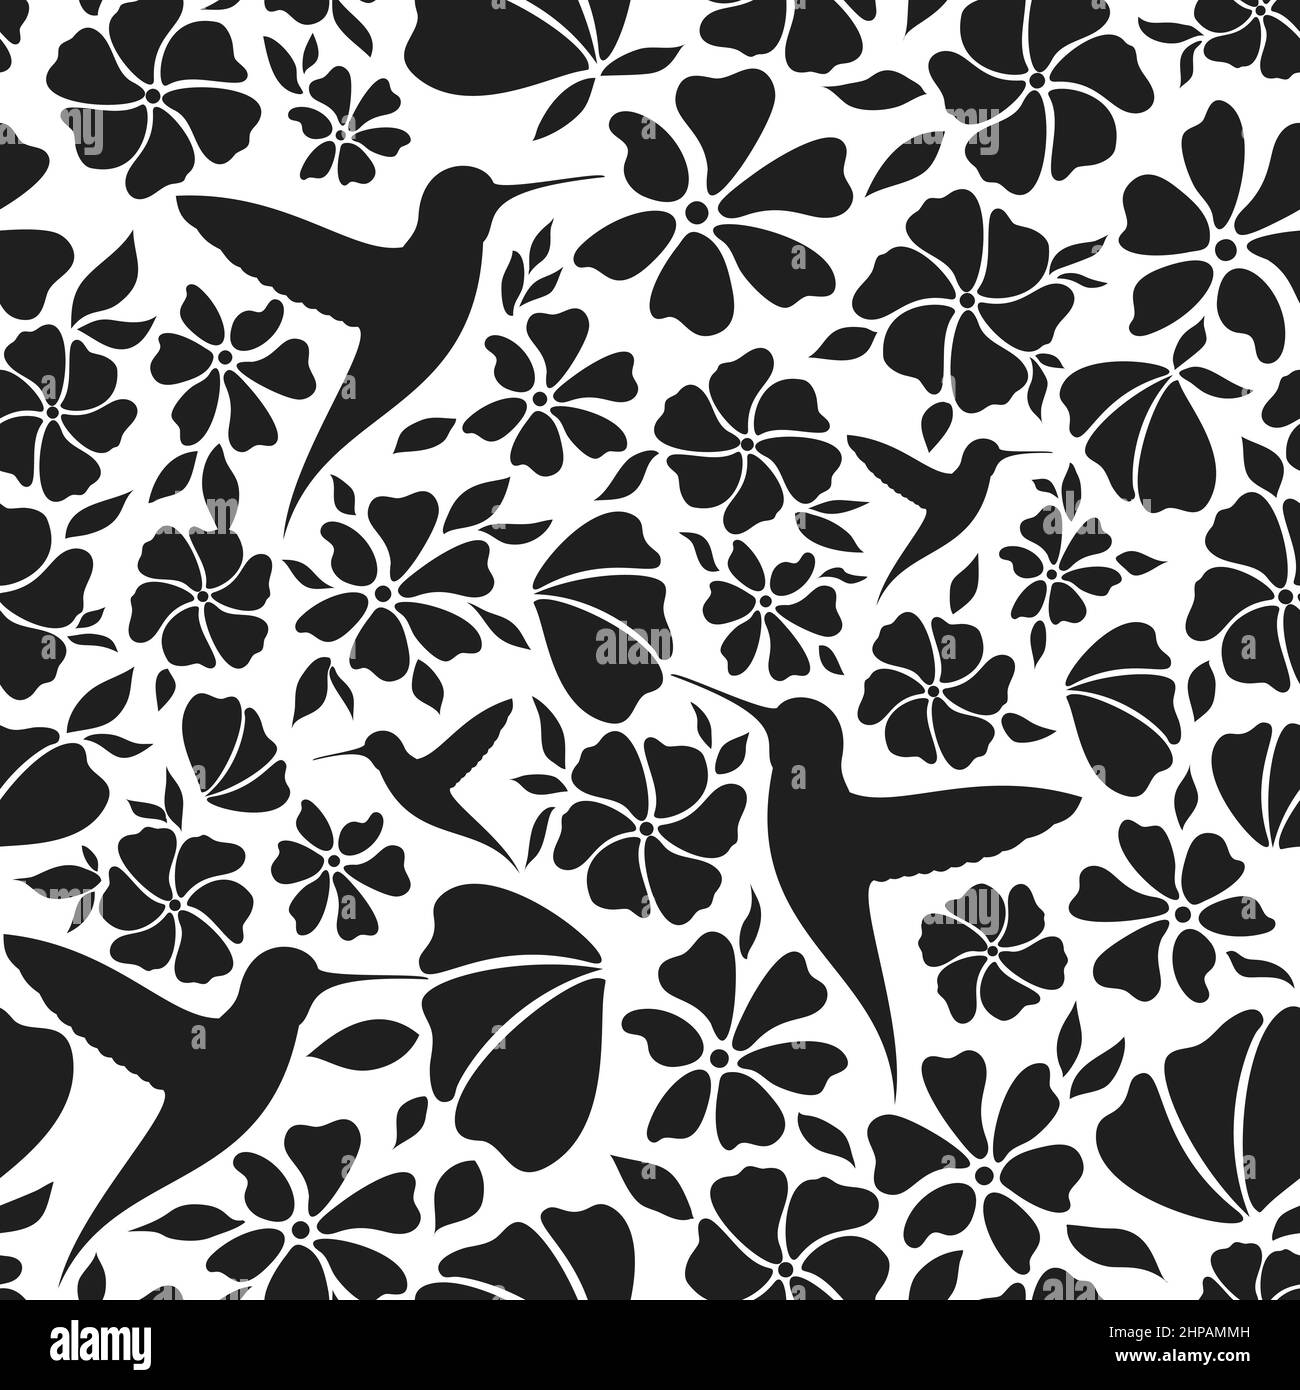 Natürliches Muster lässt Vogelblumen schwarze Silhouette. Floral Hintergrund Stempel Stoff Textil monochromen Bloom Stil. Design Web Scrapbook Magazin Einladung Postkarte nahtlose Natur Element isoliert Stock Vektor